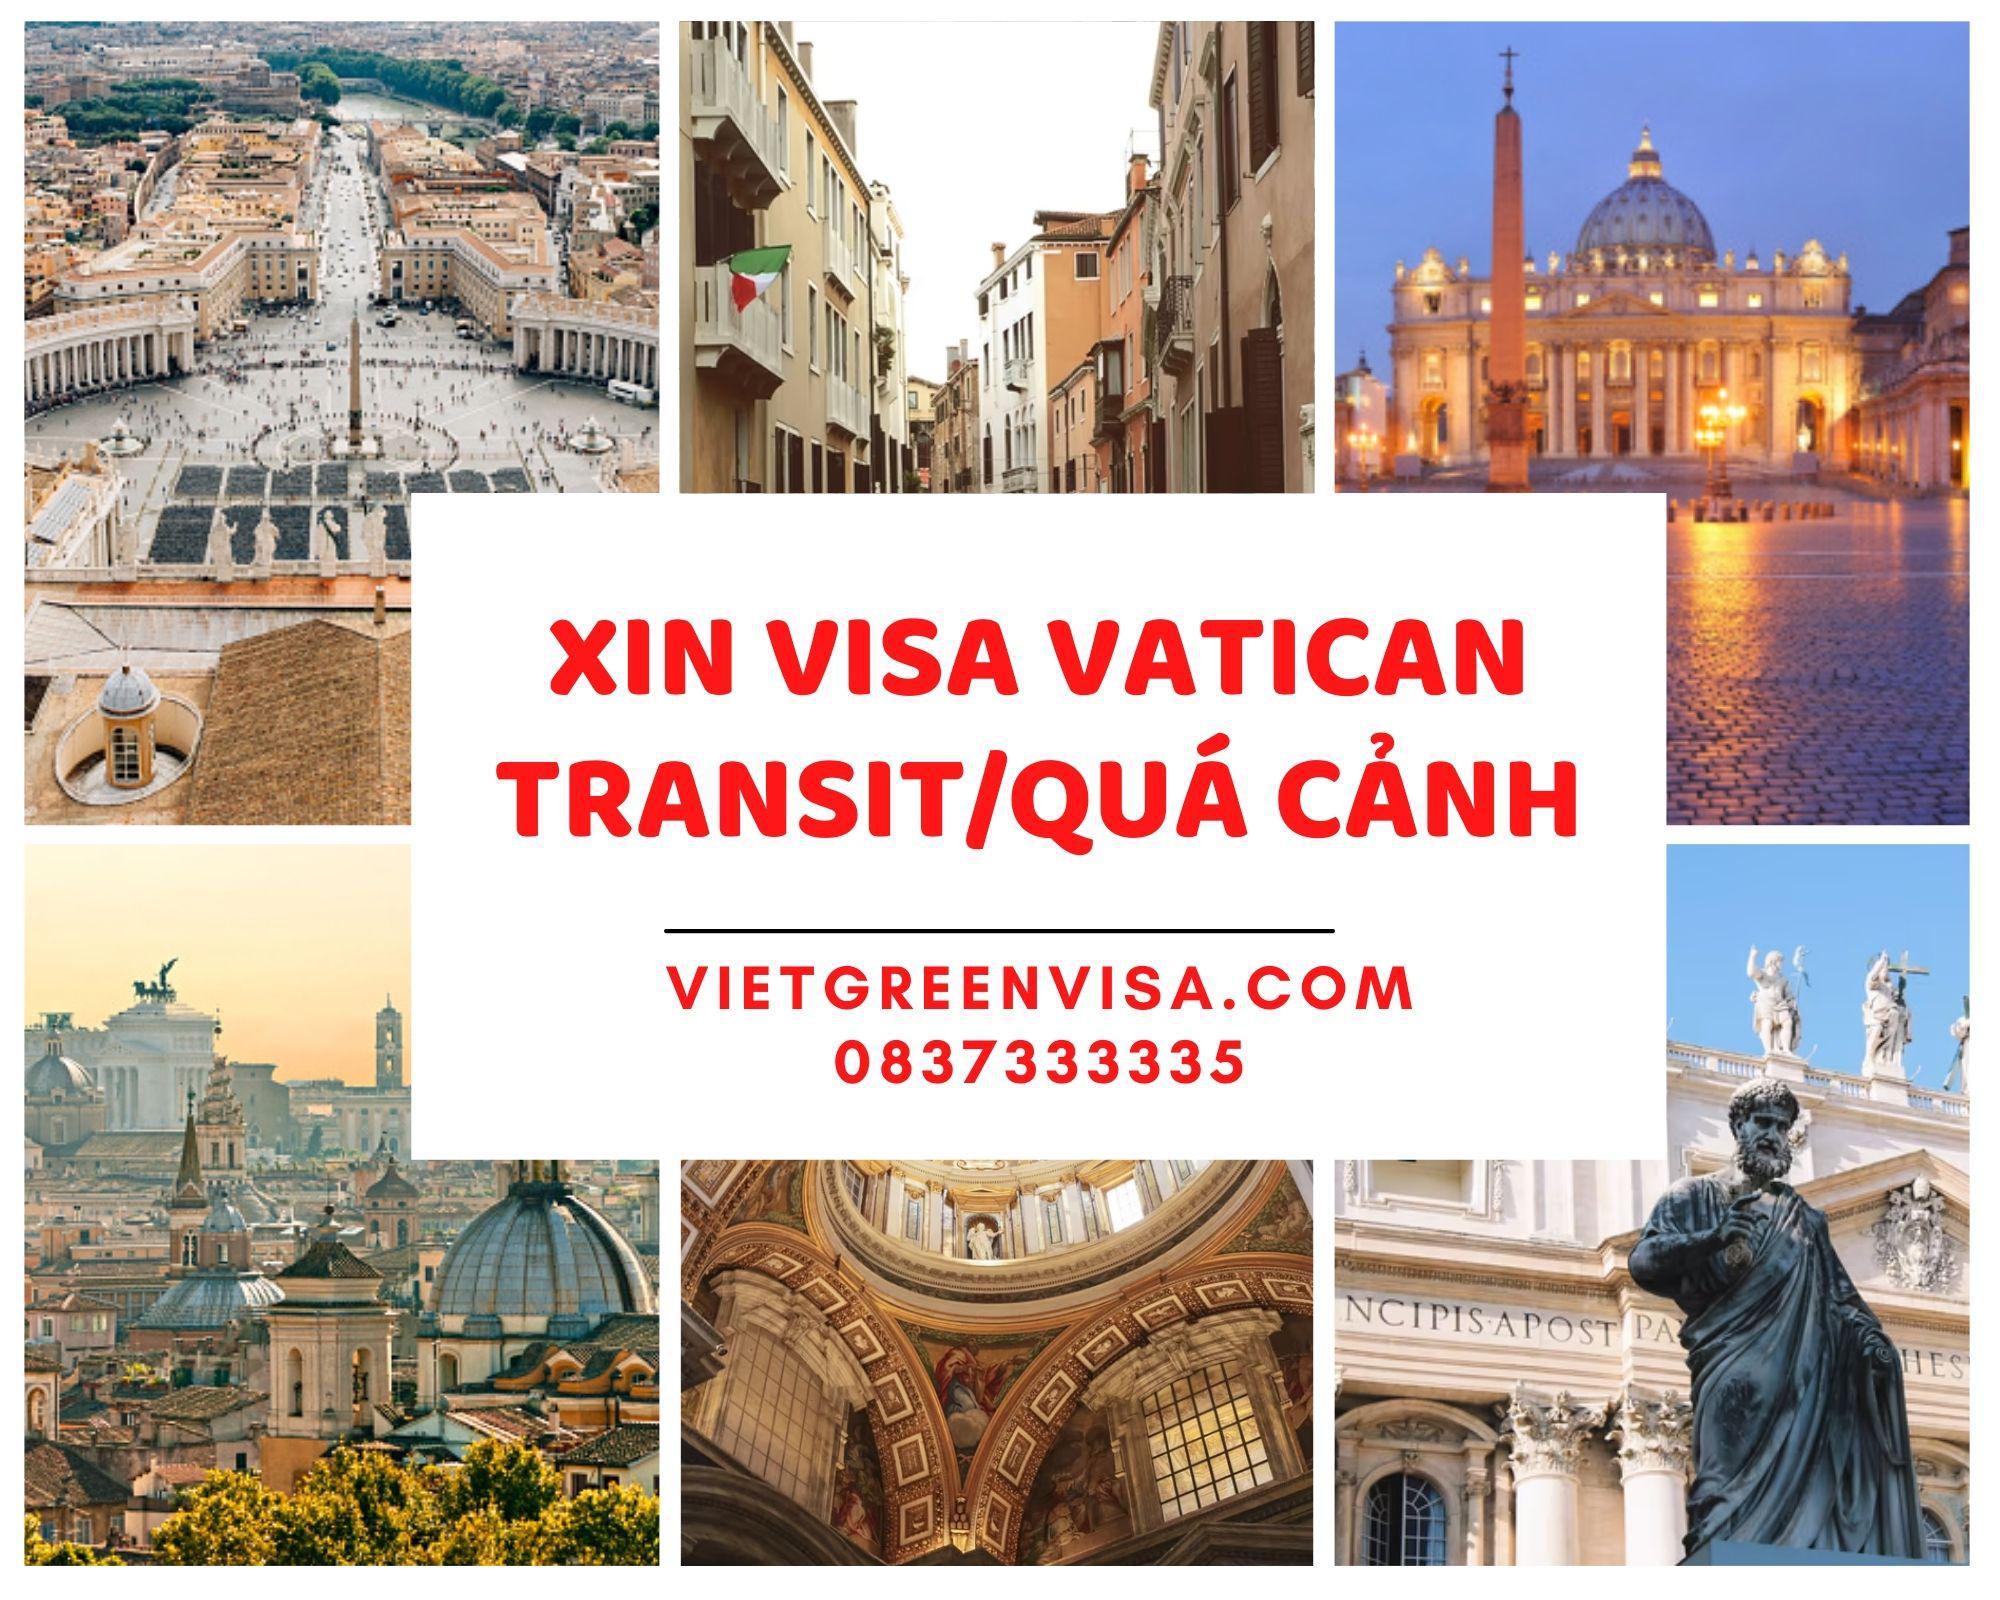 Xin visa quá cảnh qua thành Vatican visa Vatican transit uy tín